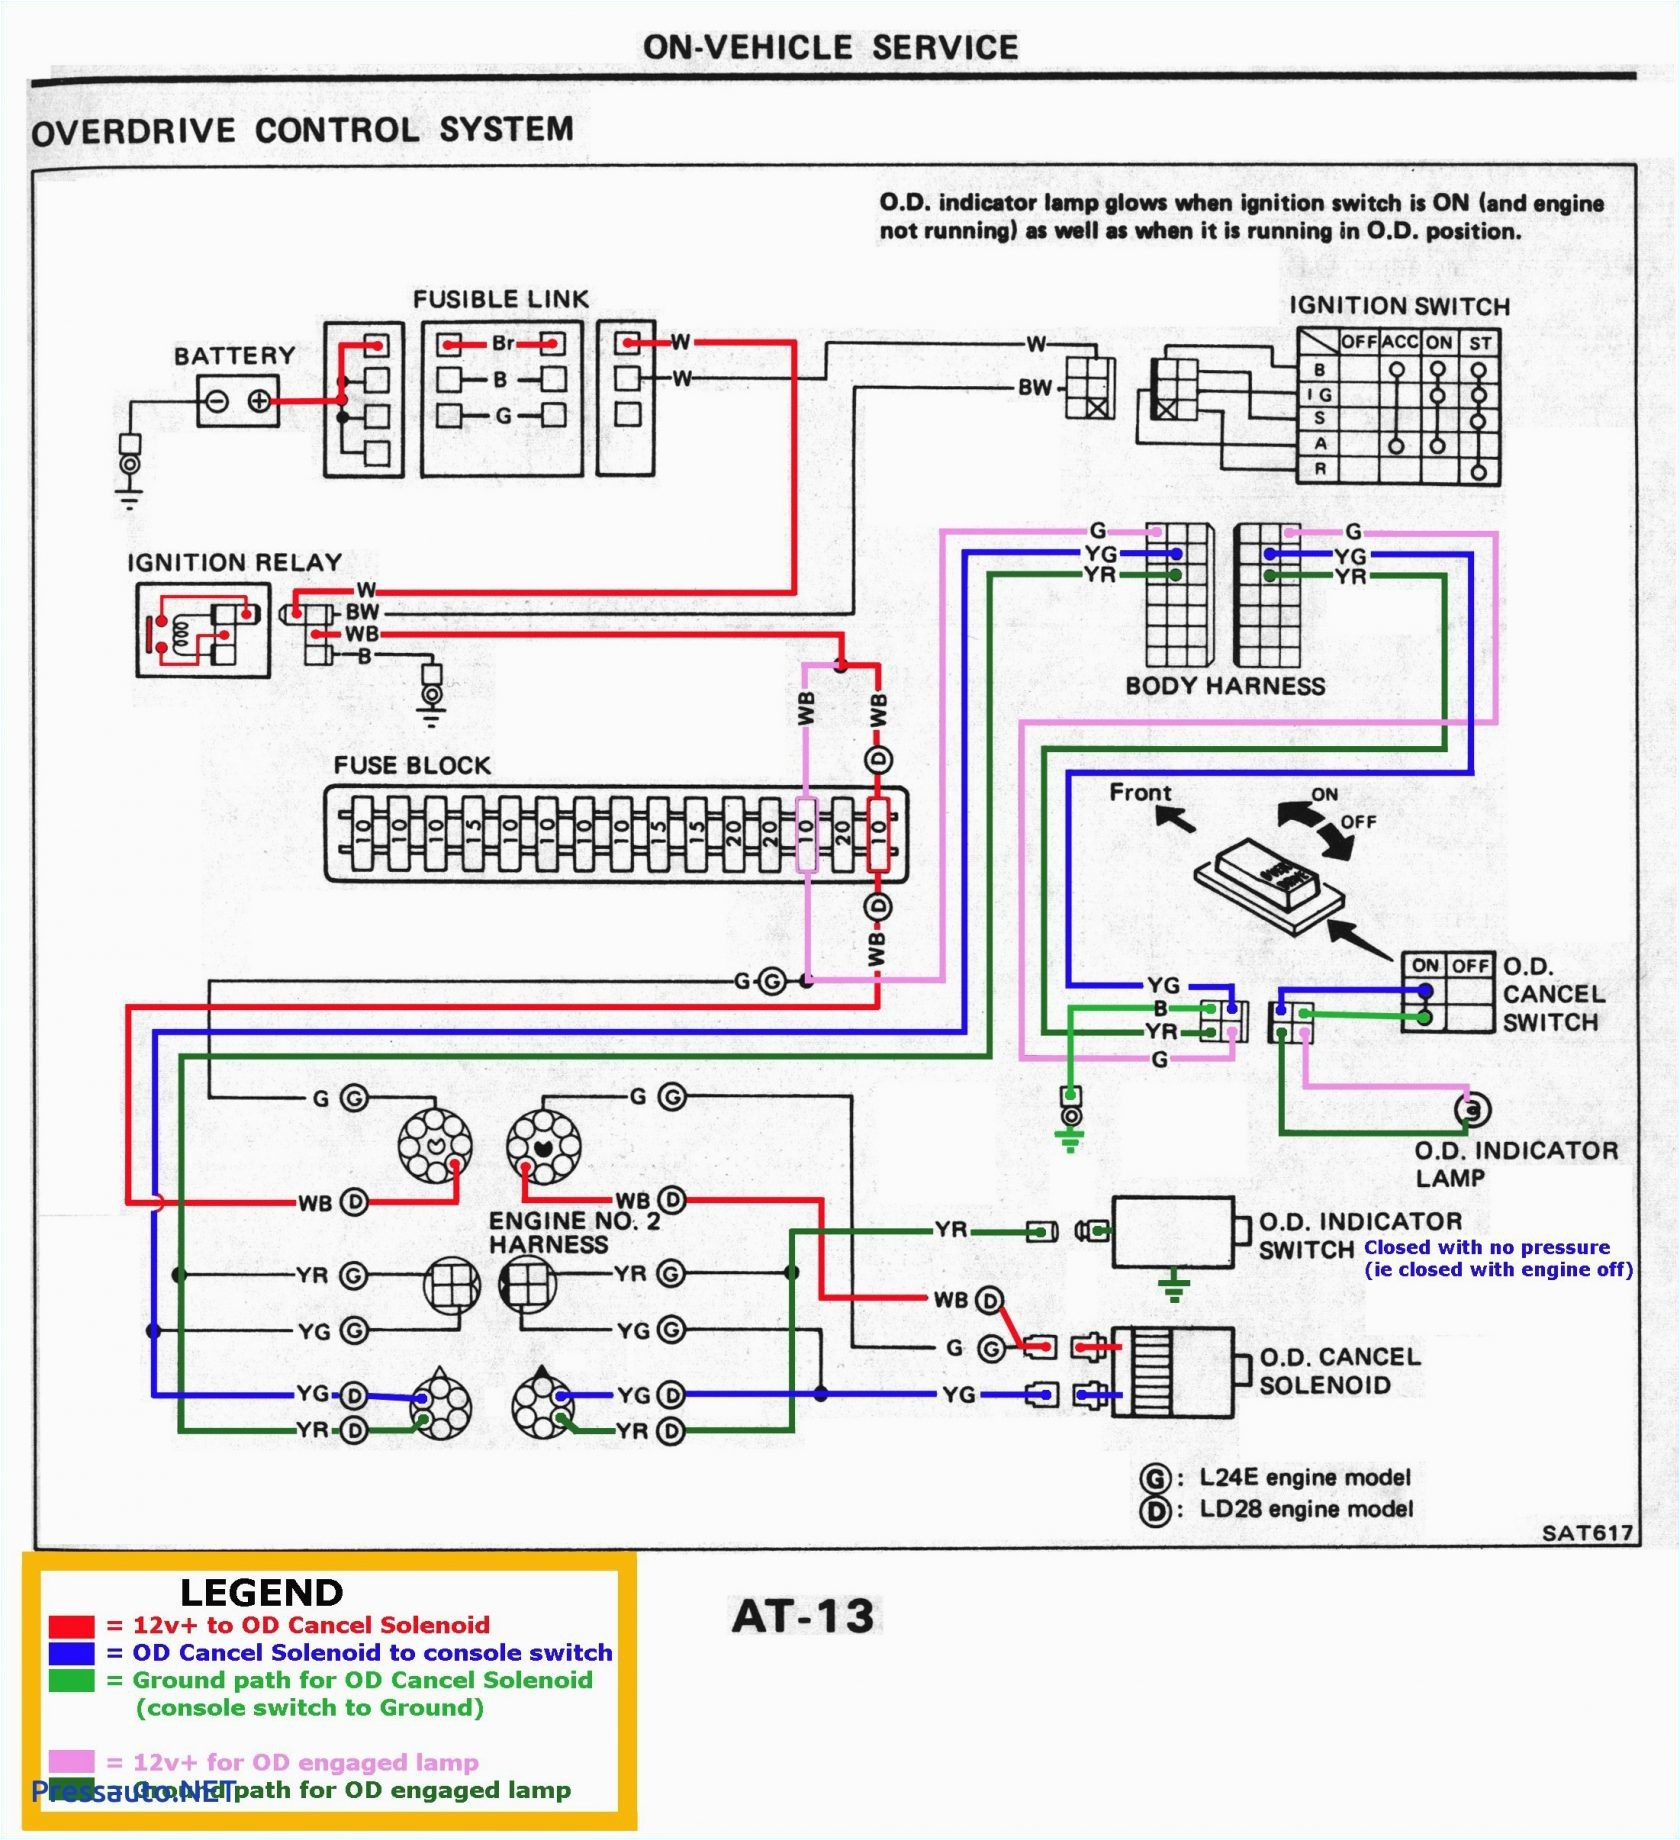 free rv wiring diagrams wiring diagram mega free rv wiring diagrams